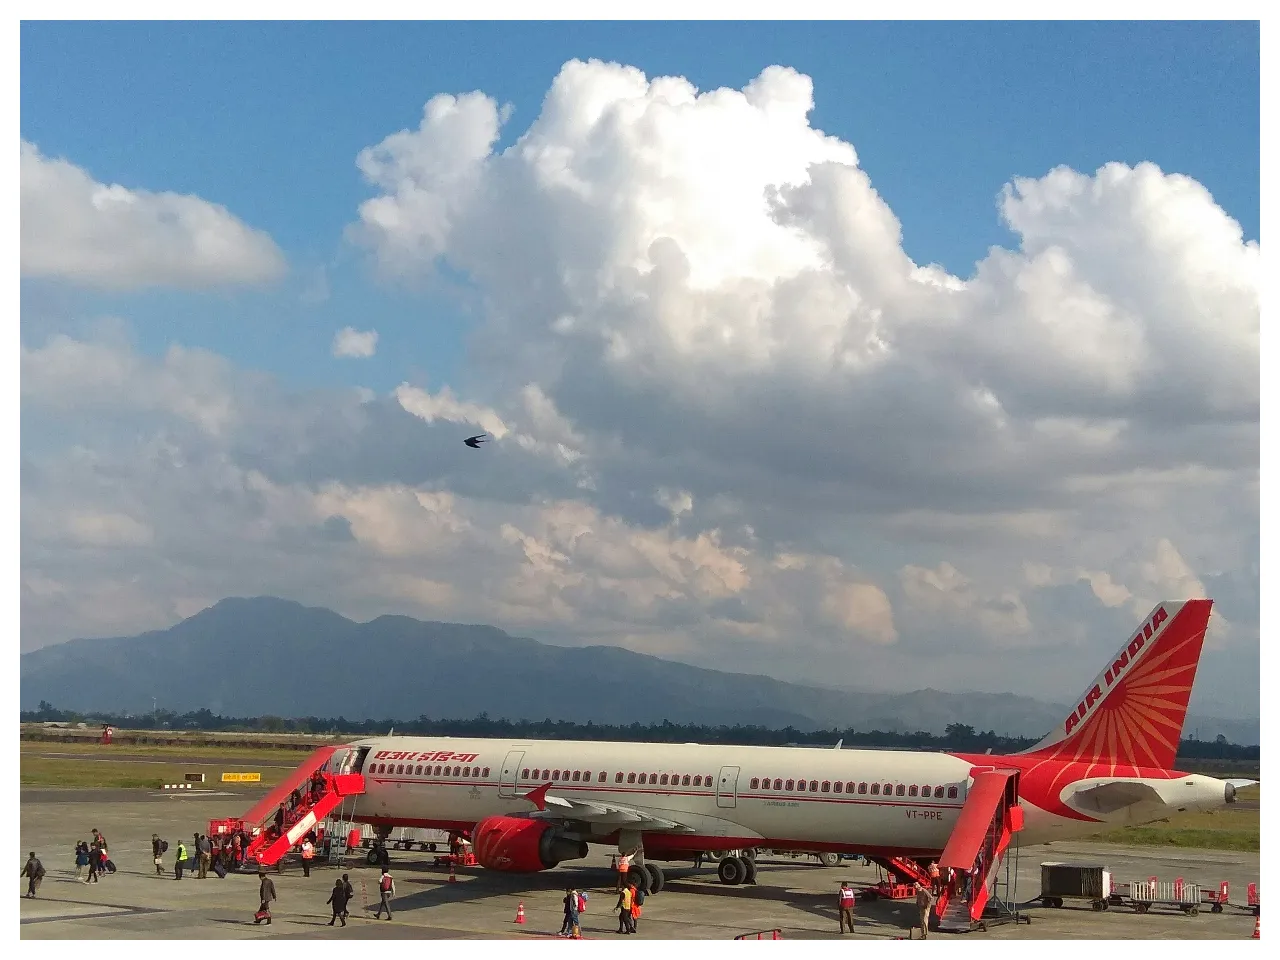 Airfare fare is being capped: Kuldiep Singh